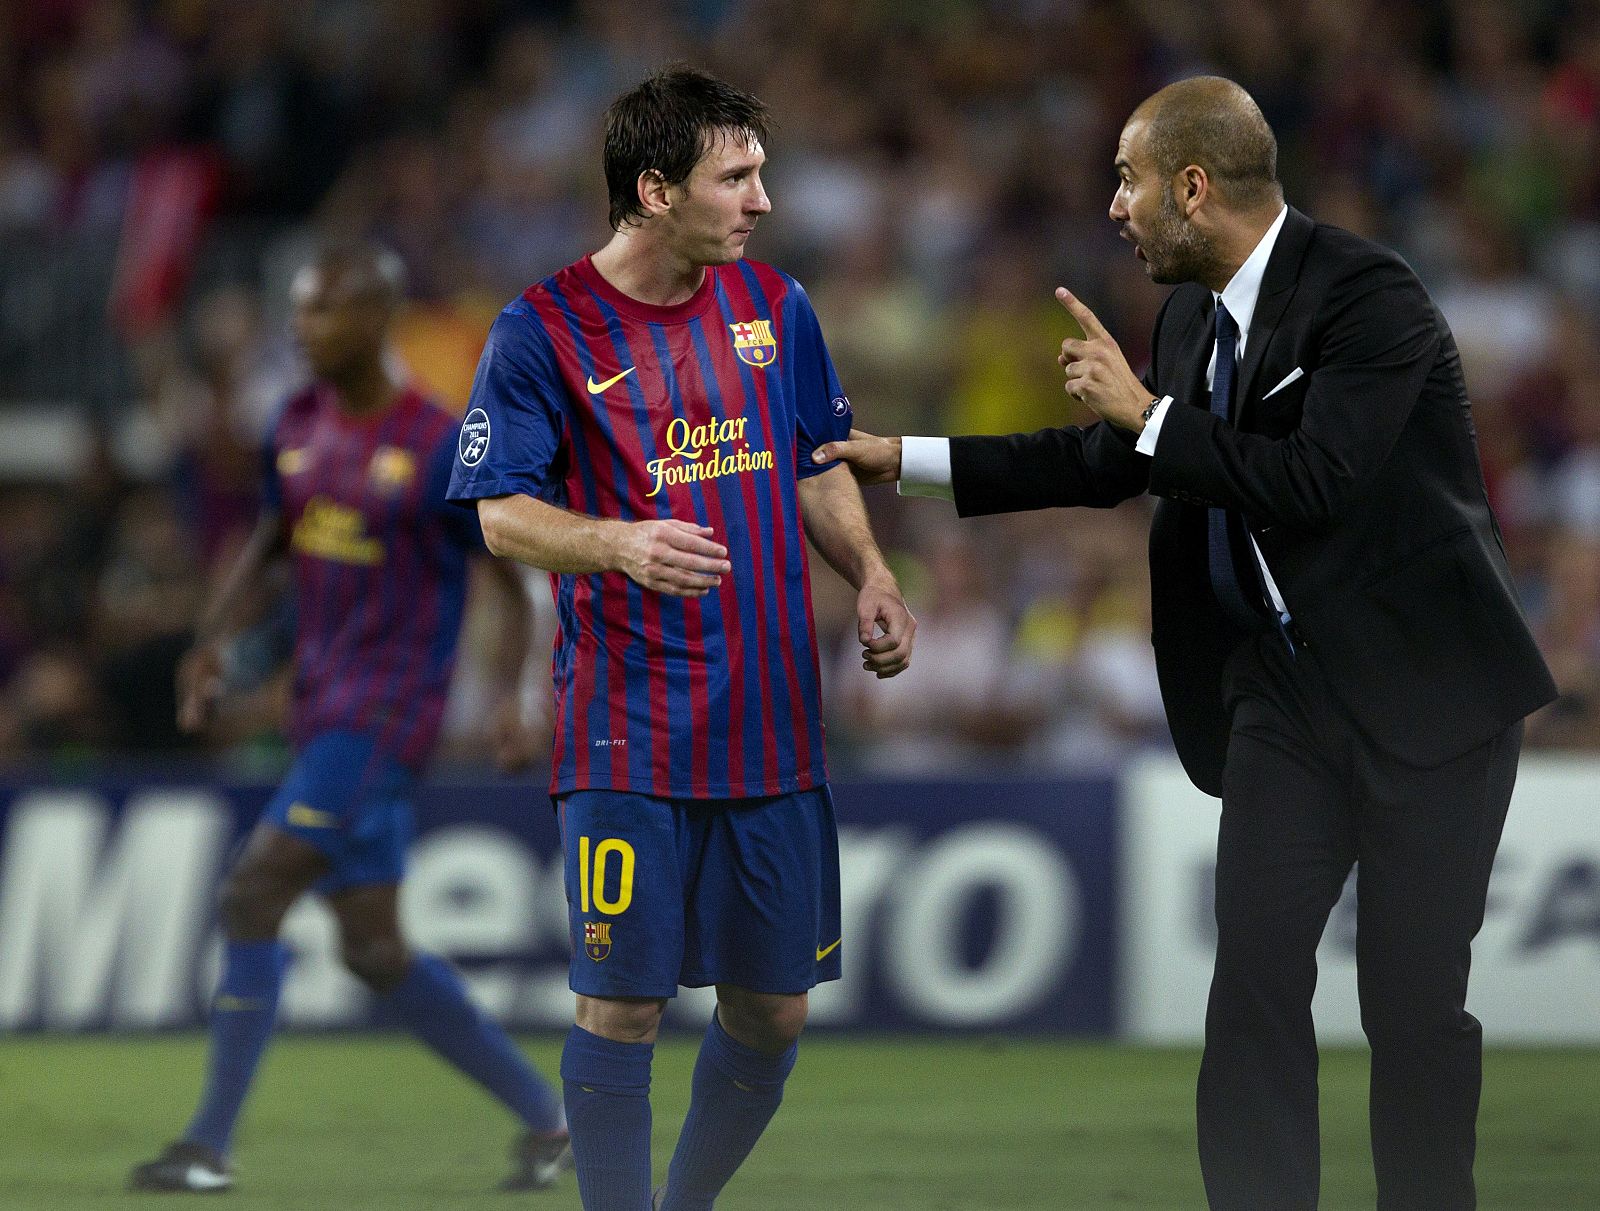 El técnico del FC Barcelona, Josep Guardiola, da instrucciones a su jugador, el argentino Leo Messi